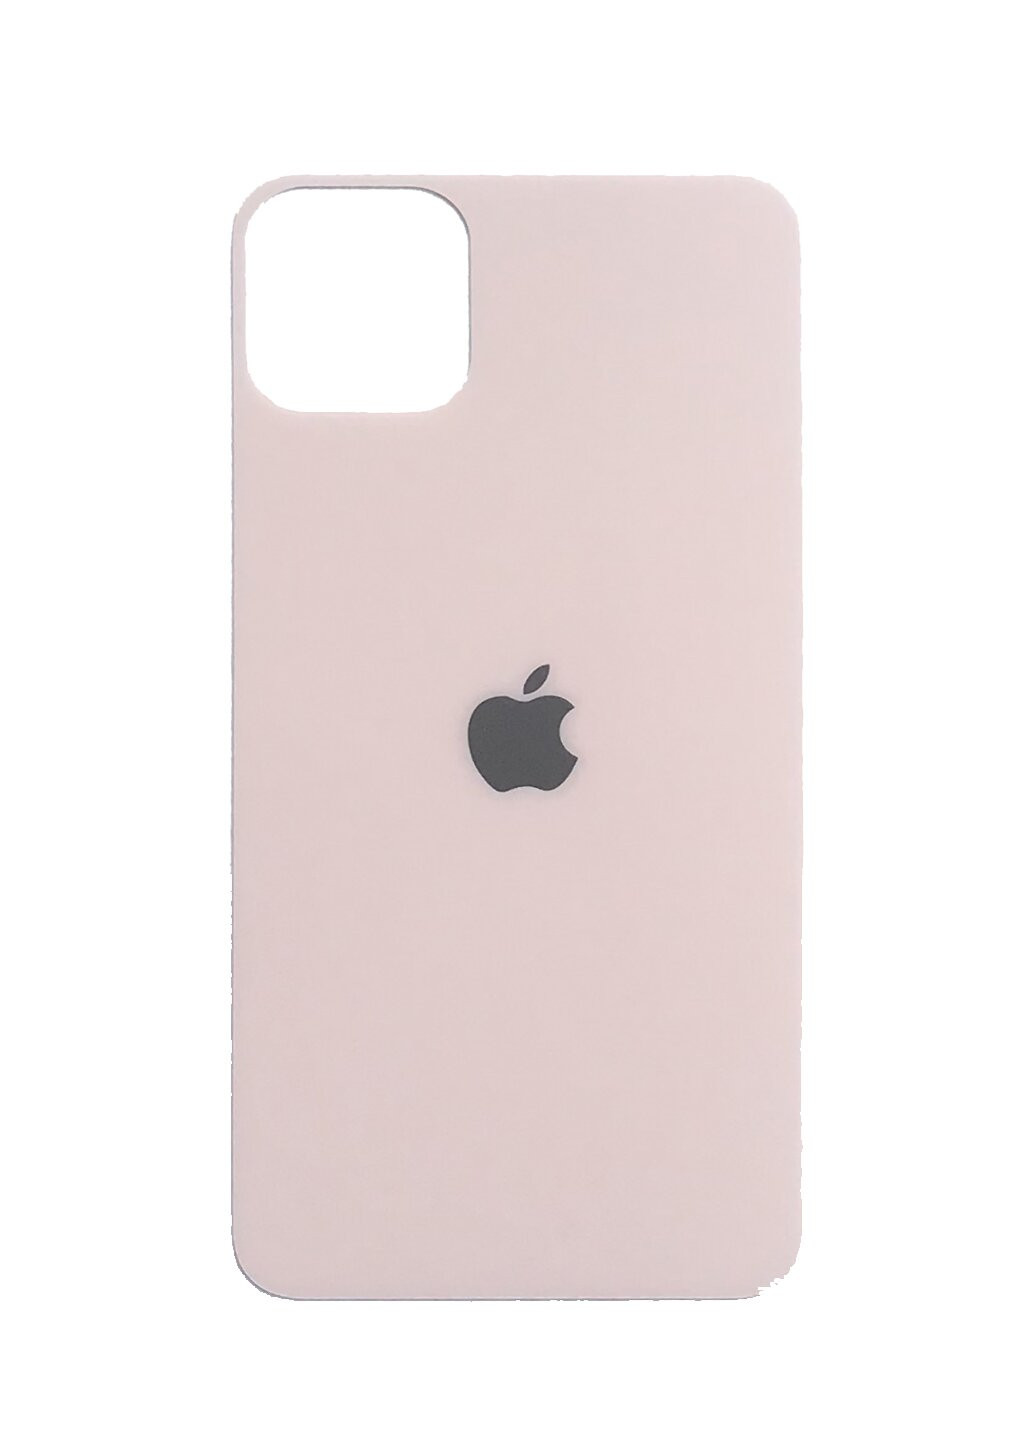 Стекло защитное на заднюю панель цветное матовое для iPhone 11 Gold CAA (220514067)